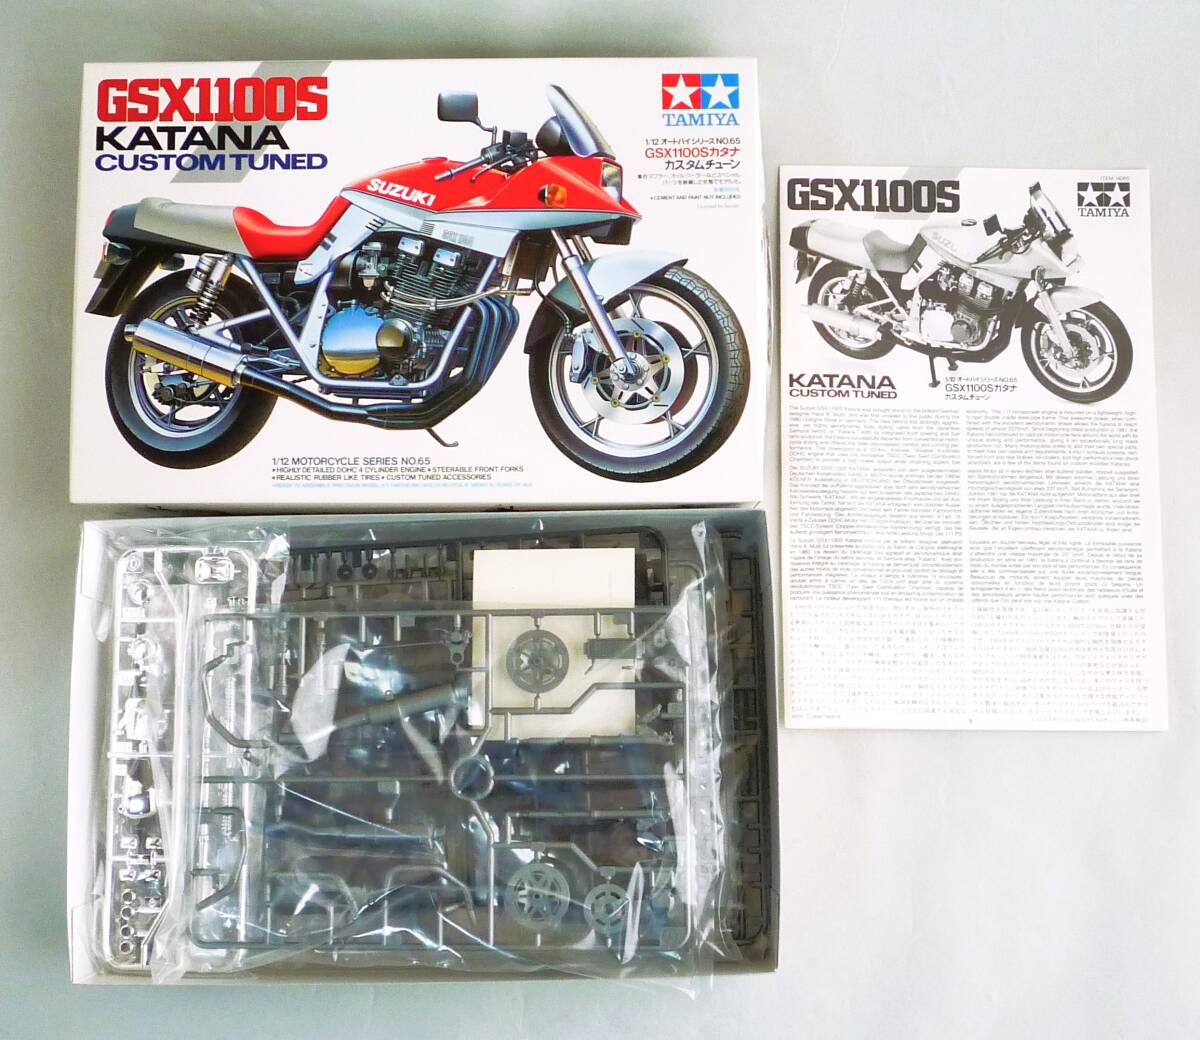 **[ нестандартный OK] не собран! Tamiya 1/12 мотоцикл серии No.65 Suzuki GSX1100S Katana custom Tune внутри пакет нераспечатанный товар [ включение в покупку возможно ][GE08A20]*